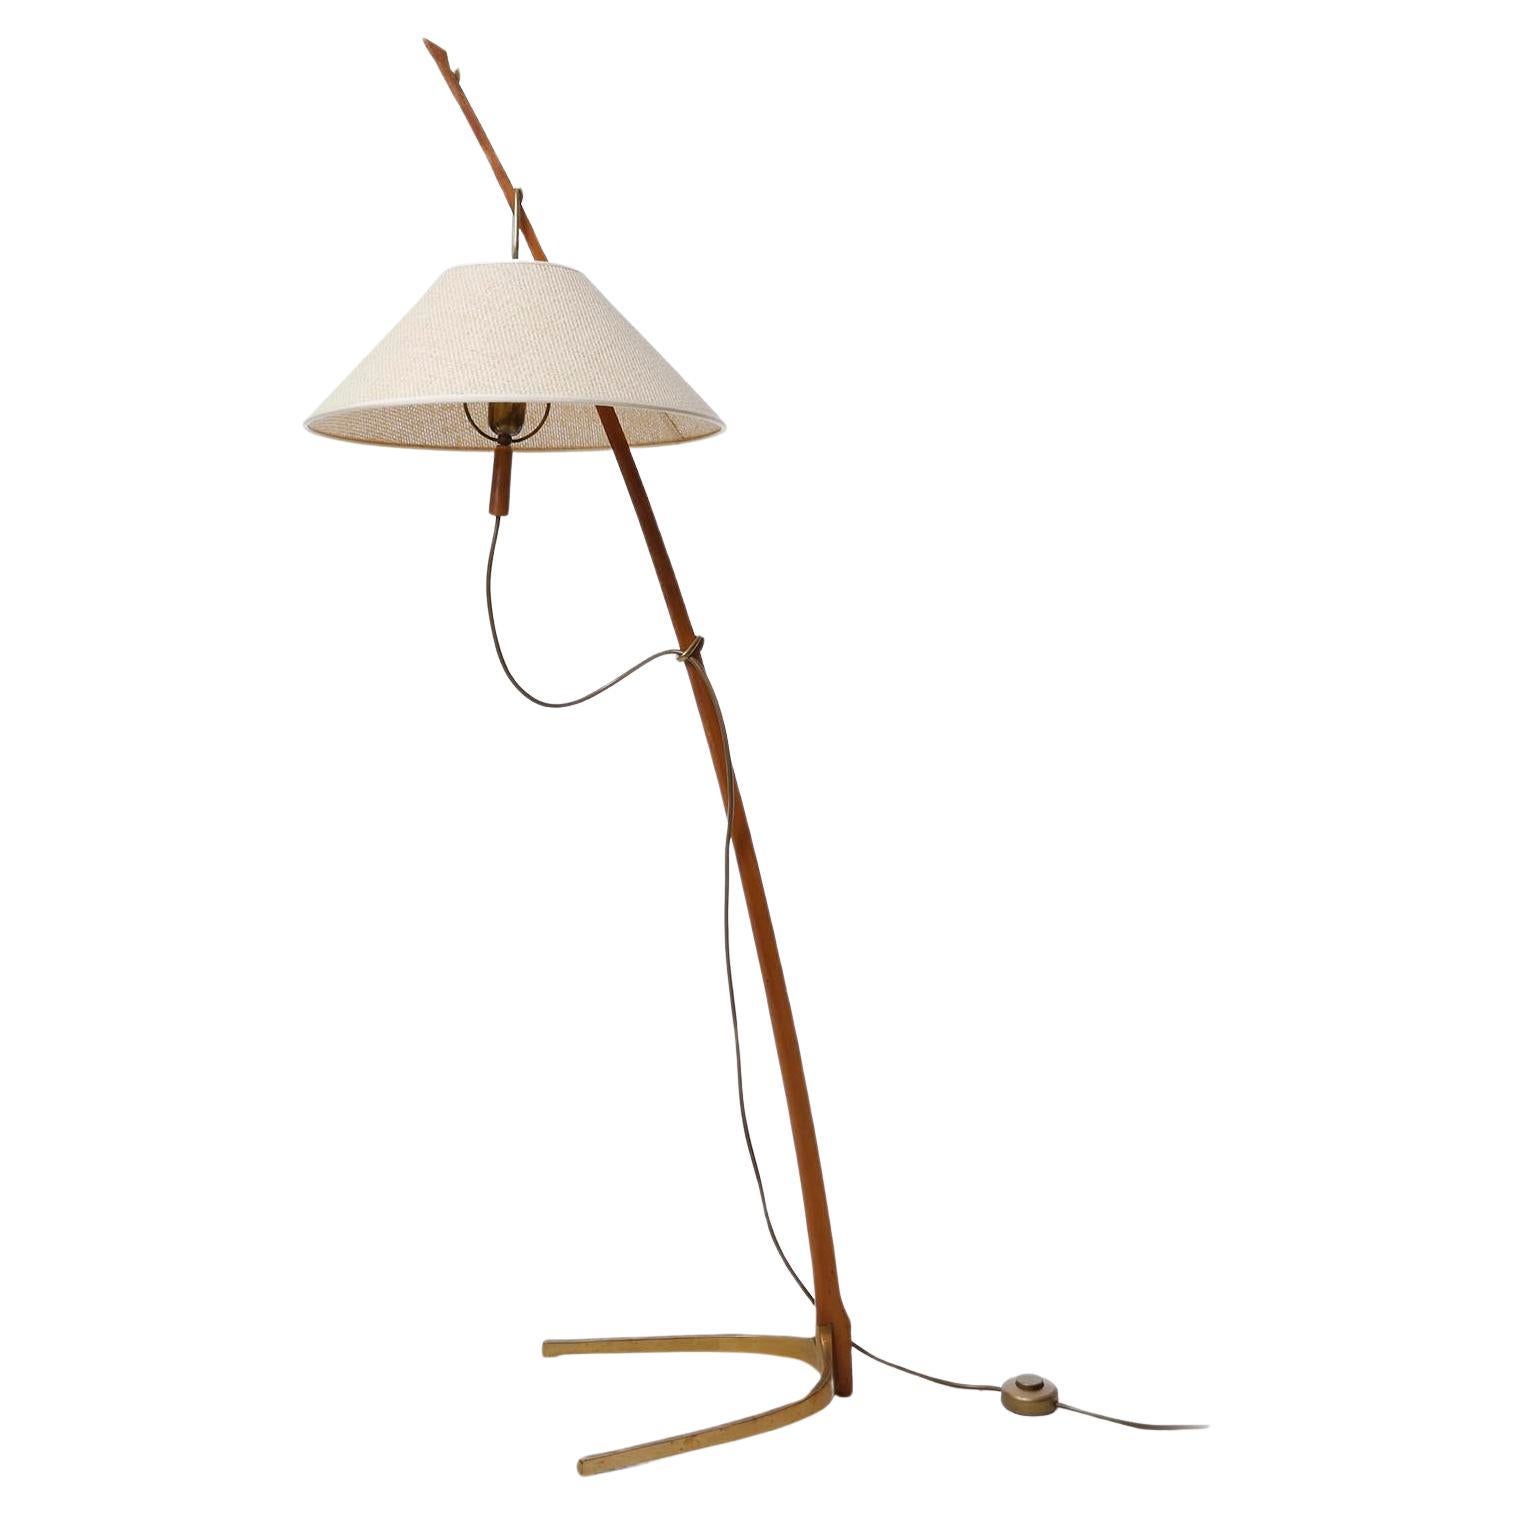 Un magnifique lampadaire de J.T. Kalmar, Vienne, Autriche, fabriqué au milieu du siècle, vers 1960 (années 1950 ou 1960).
La lampe est documentée dans les catalogues Kalmar de 1952 et de 1960.
Dornstab